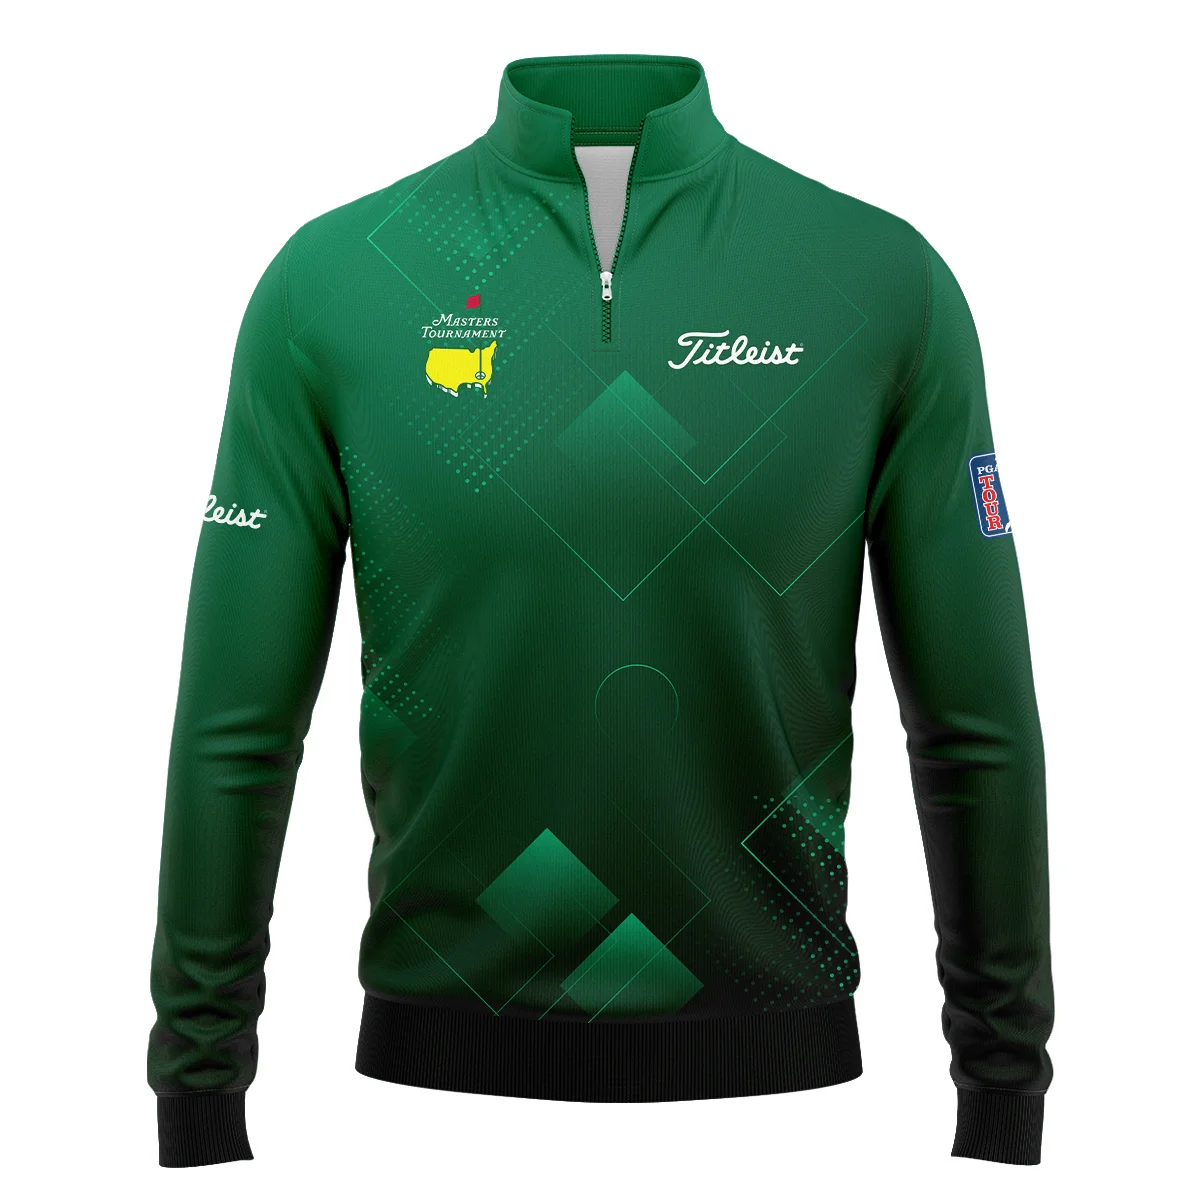 Masters Tournament Titleist Zipper Polo Shirt Golf Sports Green Abstract Geometric Zipper Polo Shirt For Men